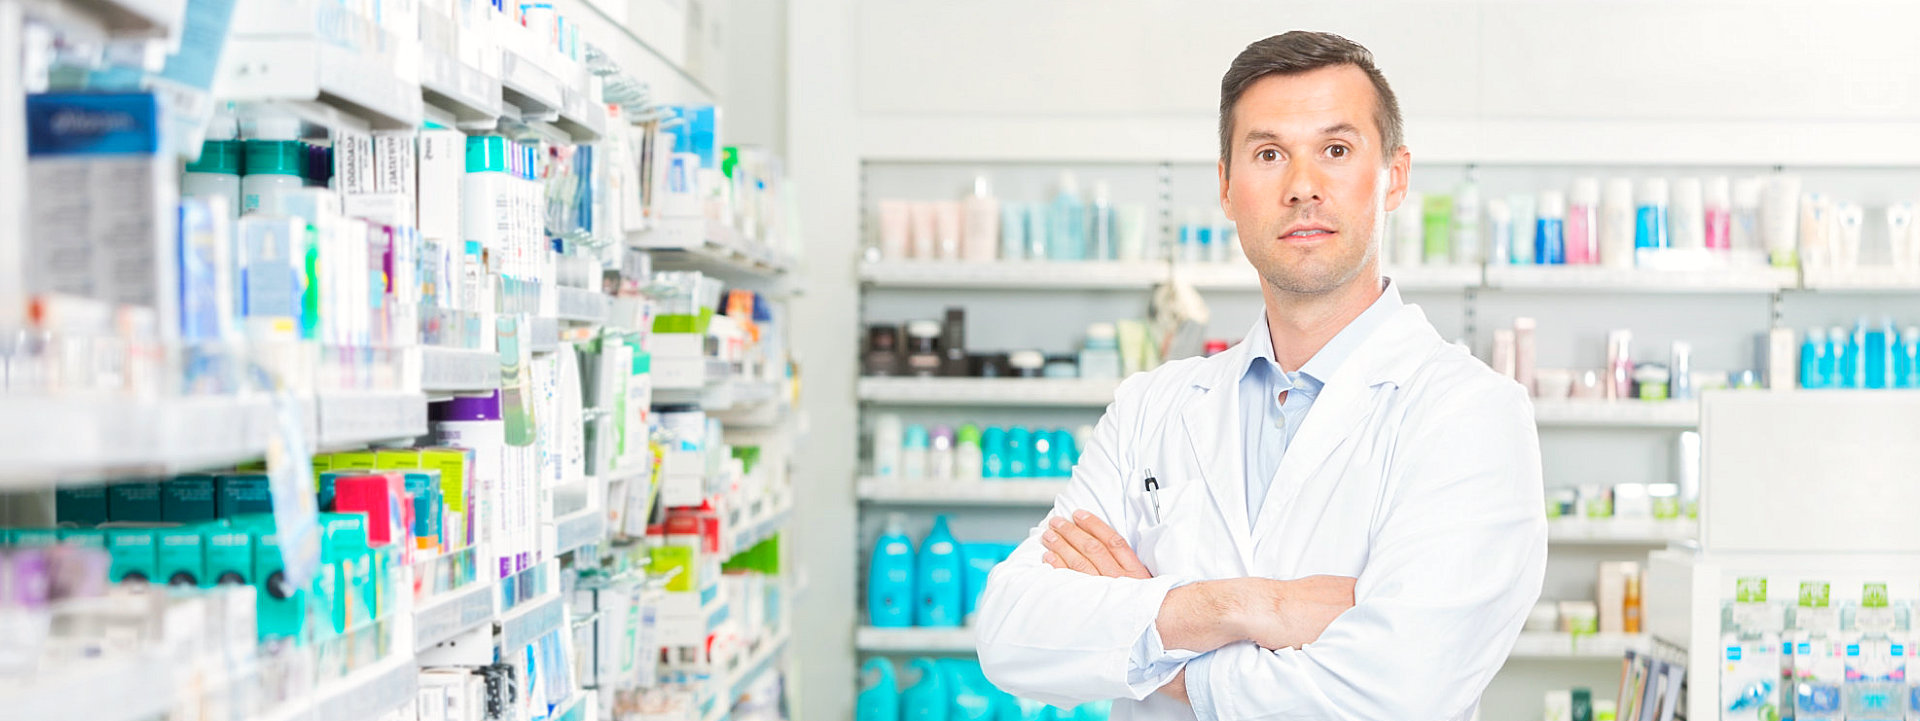 Male pharmacist